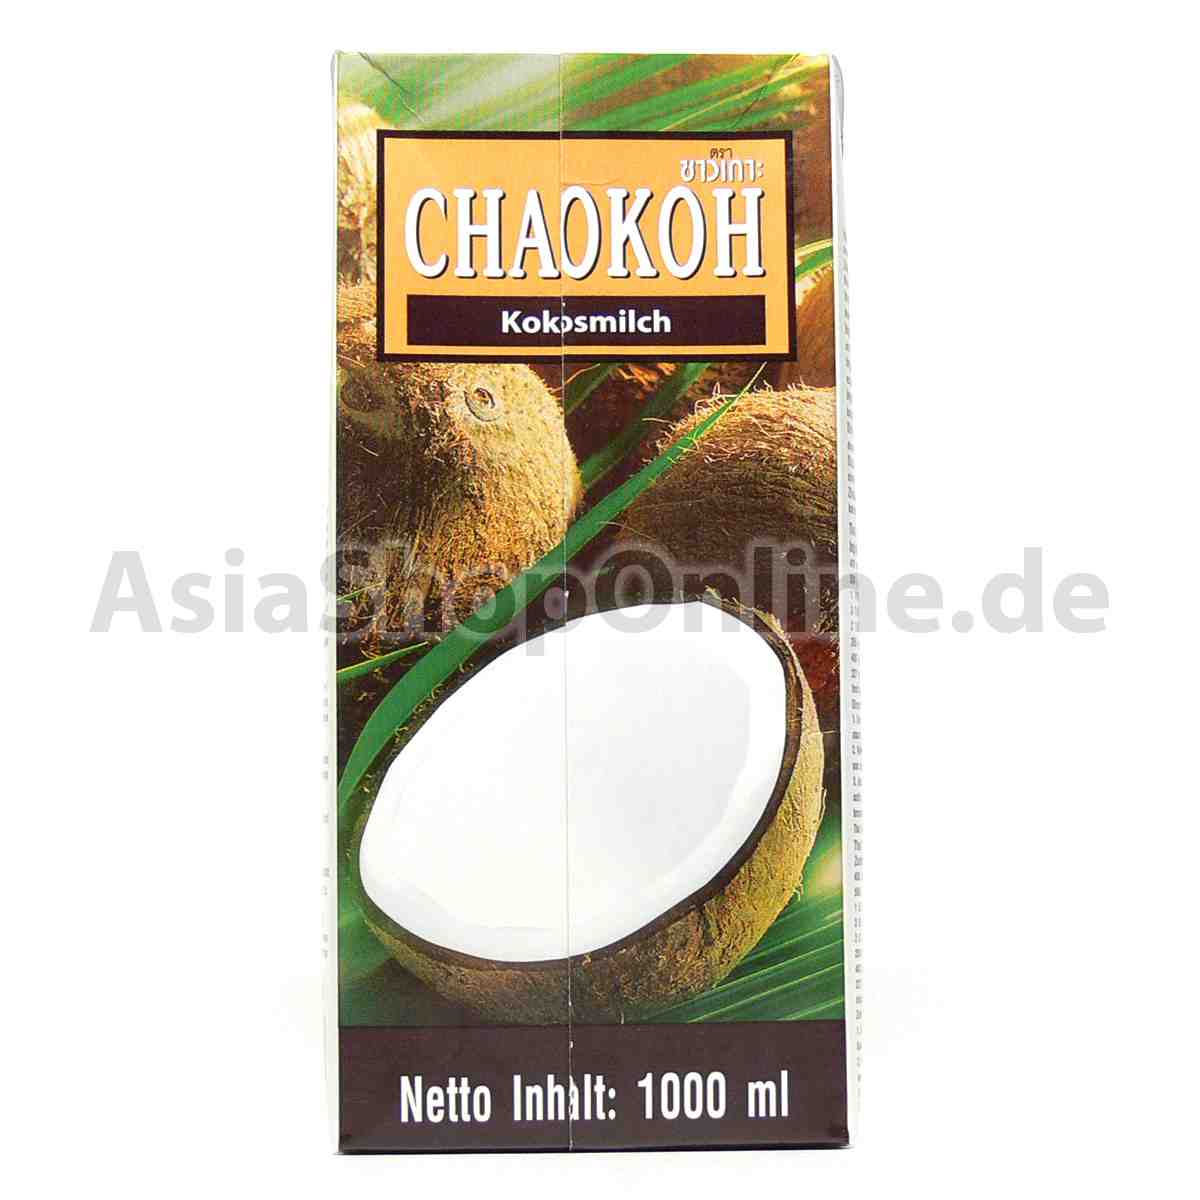 Kokosmilch - Chaokoh - 1000 ml